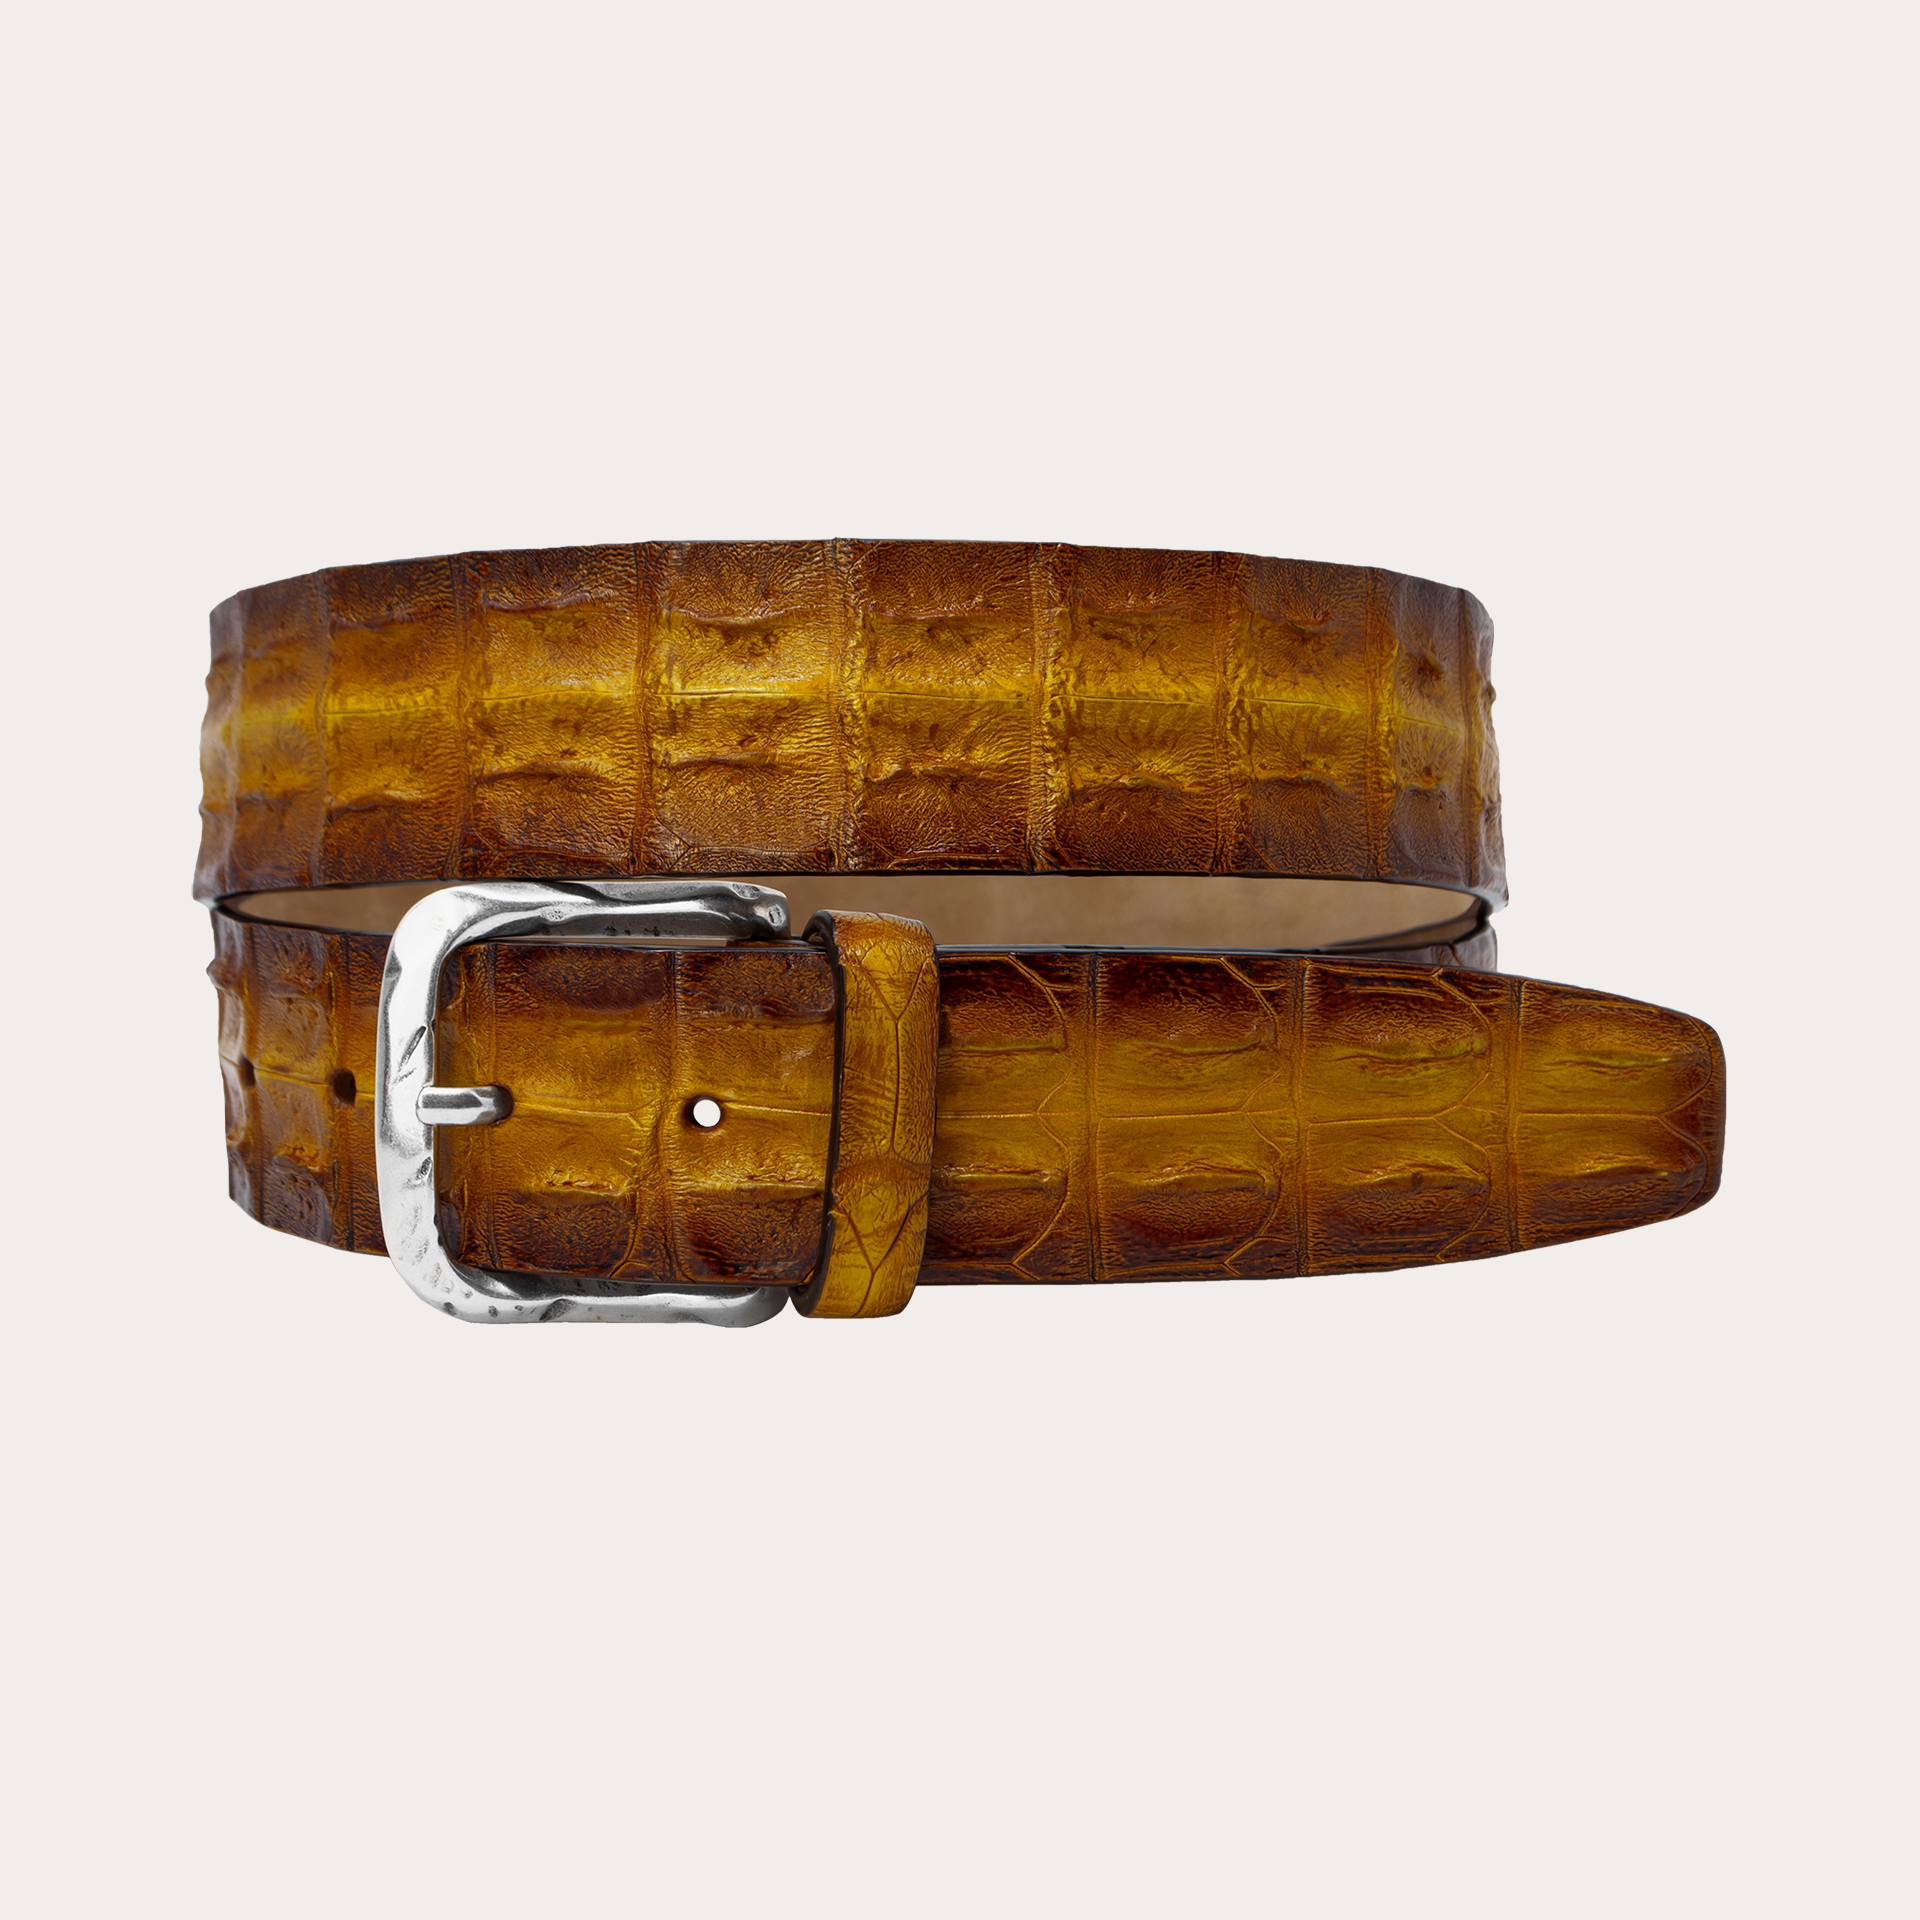 Cintura di coccodrillo marrone gold colorata e sfumata a mano